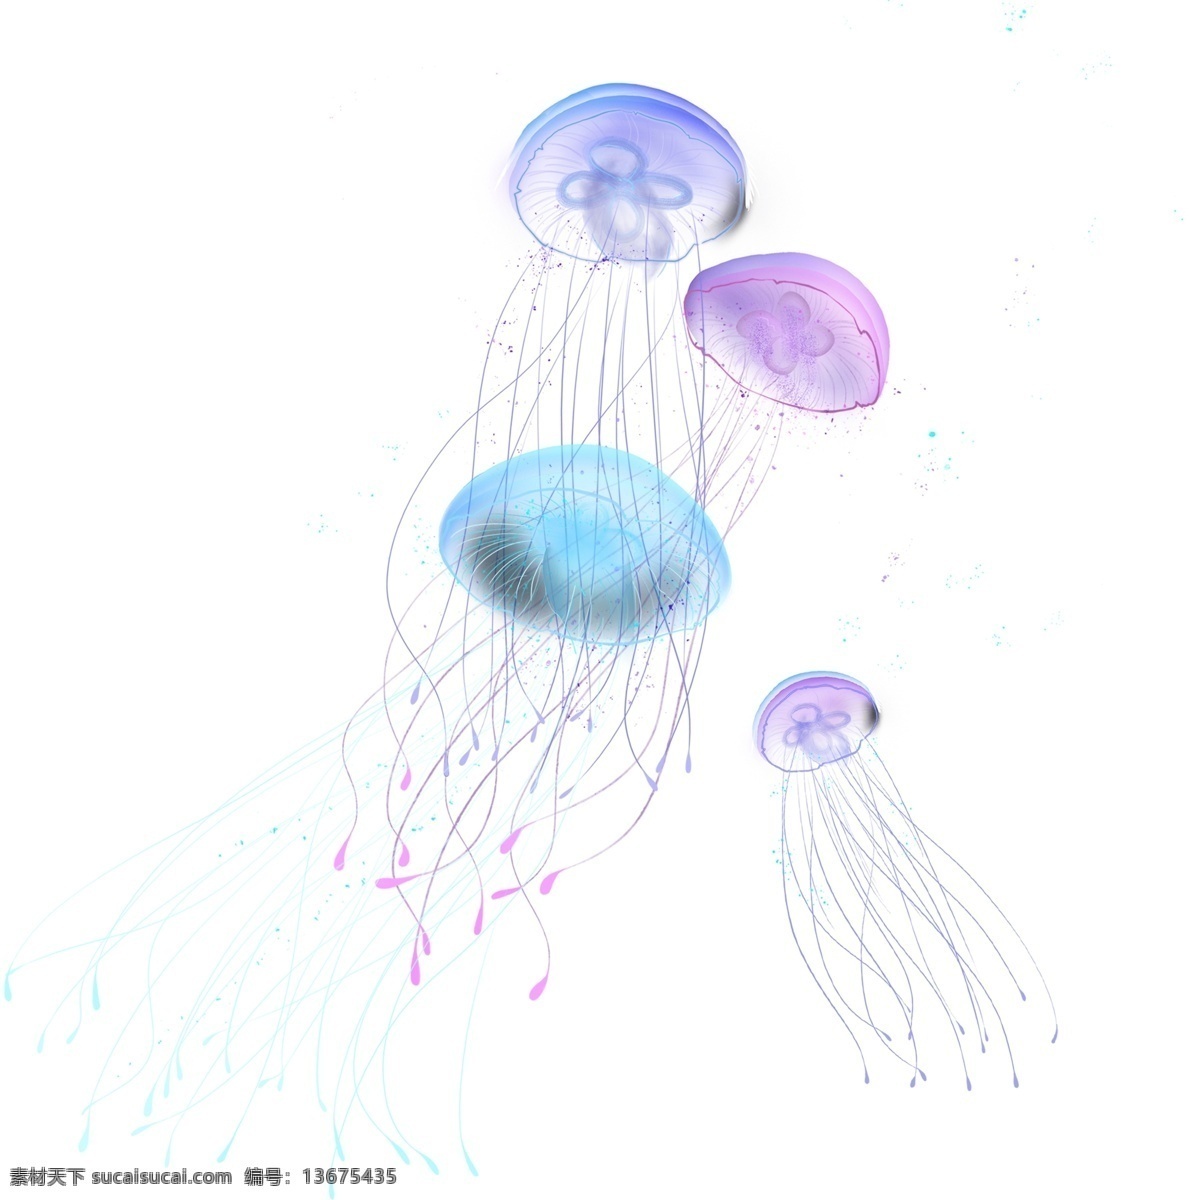 手绘 多彩 海洋生物 水母 原创 元素 原创元素 大海 伞状 彩色水母 水彩